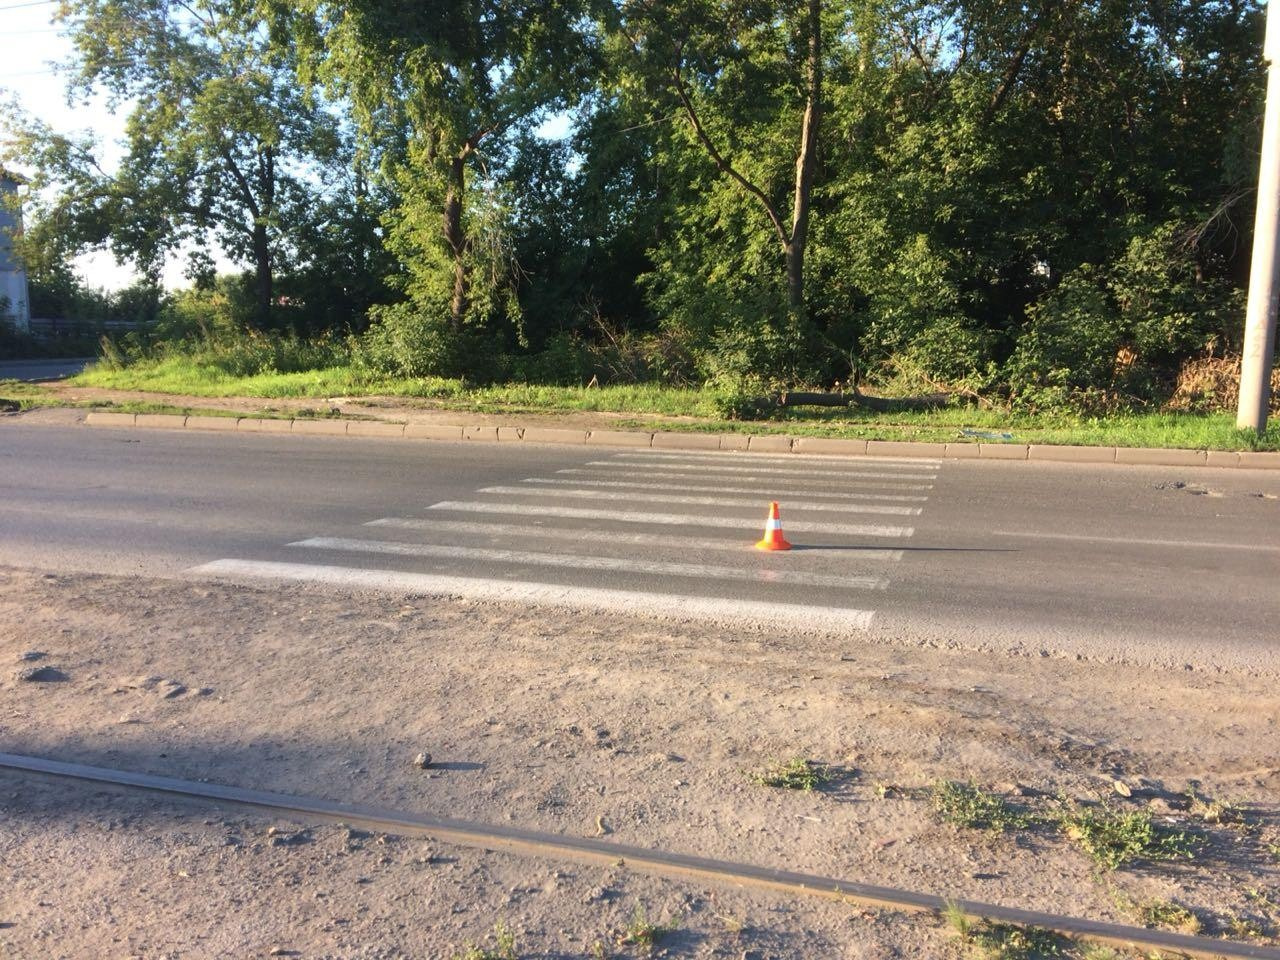 ДТП случилось на пешеходном переходе недалеко от остановки «Завод ЖБИ-1» — пострадавшая скончалась от травм через два дня